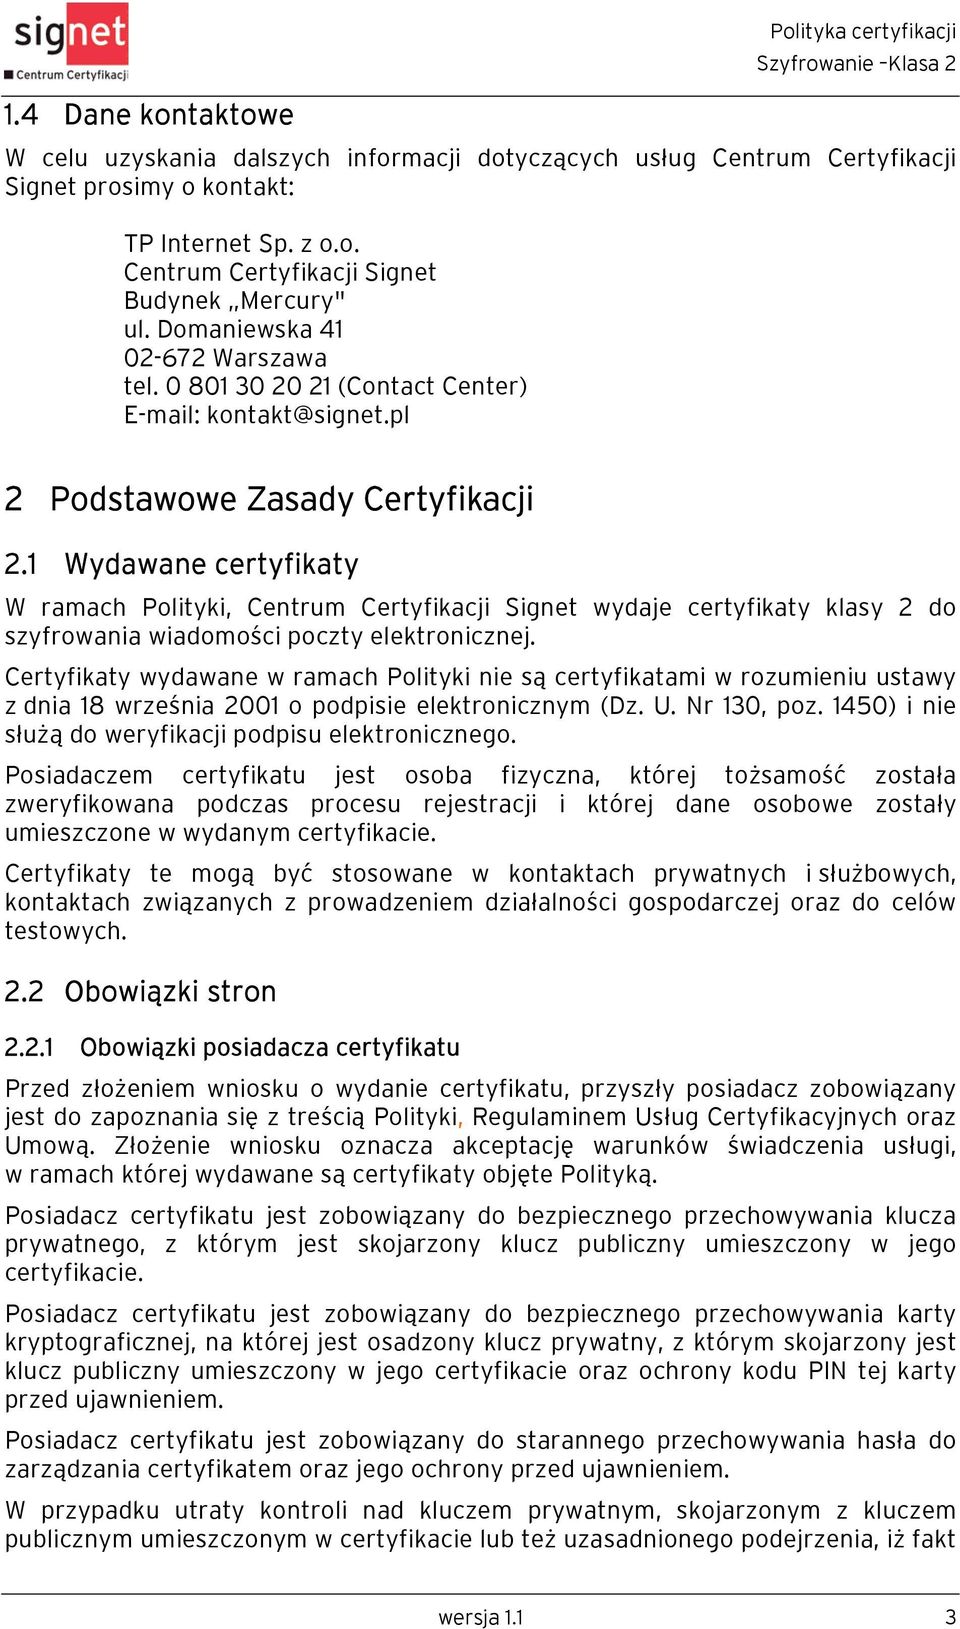 1 Wydawane certyfikaty W ramach Polityki, Centrum Certyfikacji Signet wydaje certyfikaty klasy 2 do szyfrowania wiadomości poczty elektronicznej.